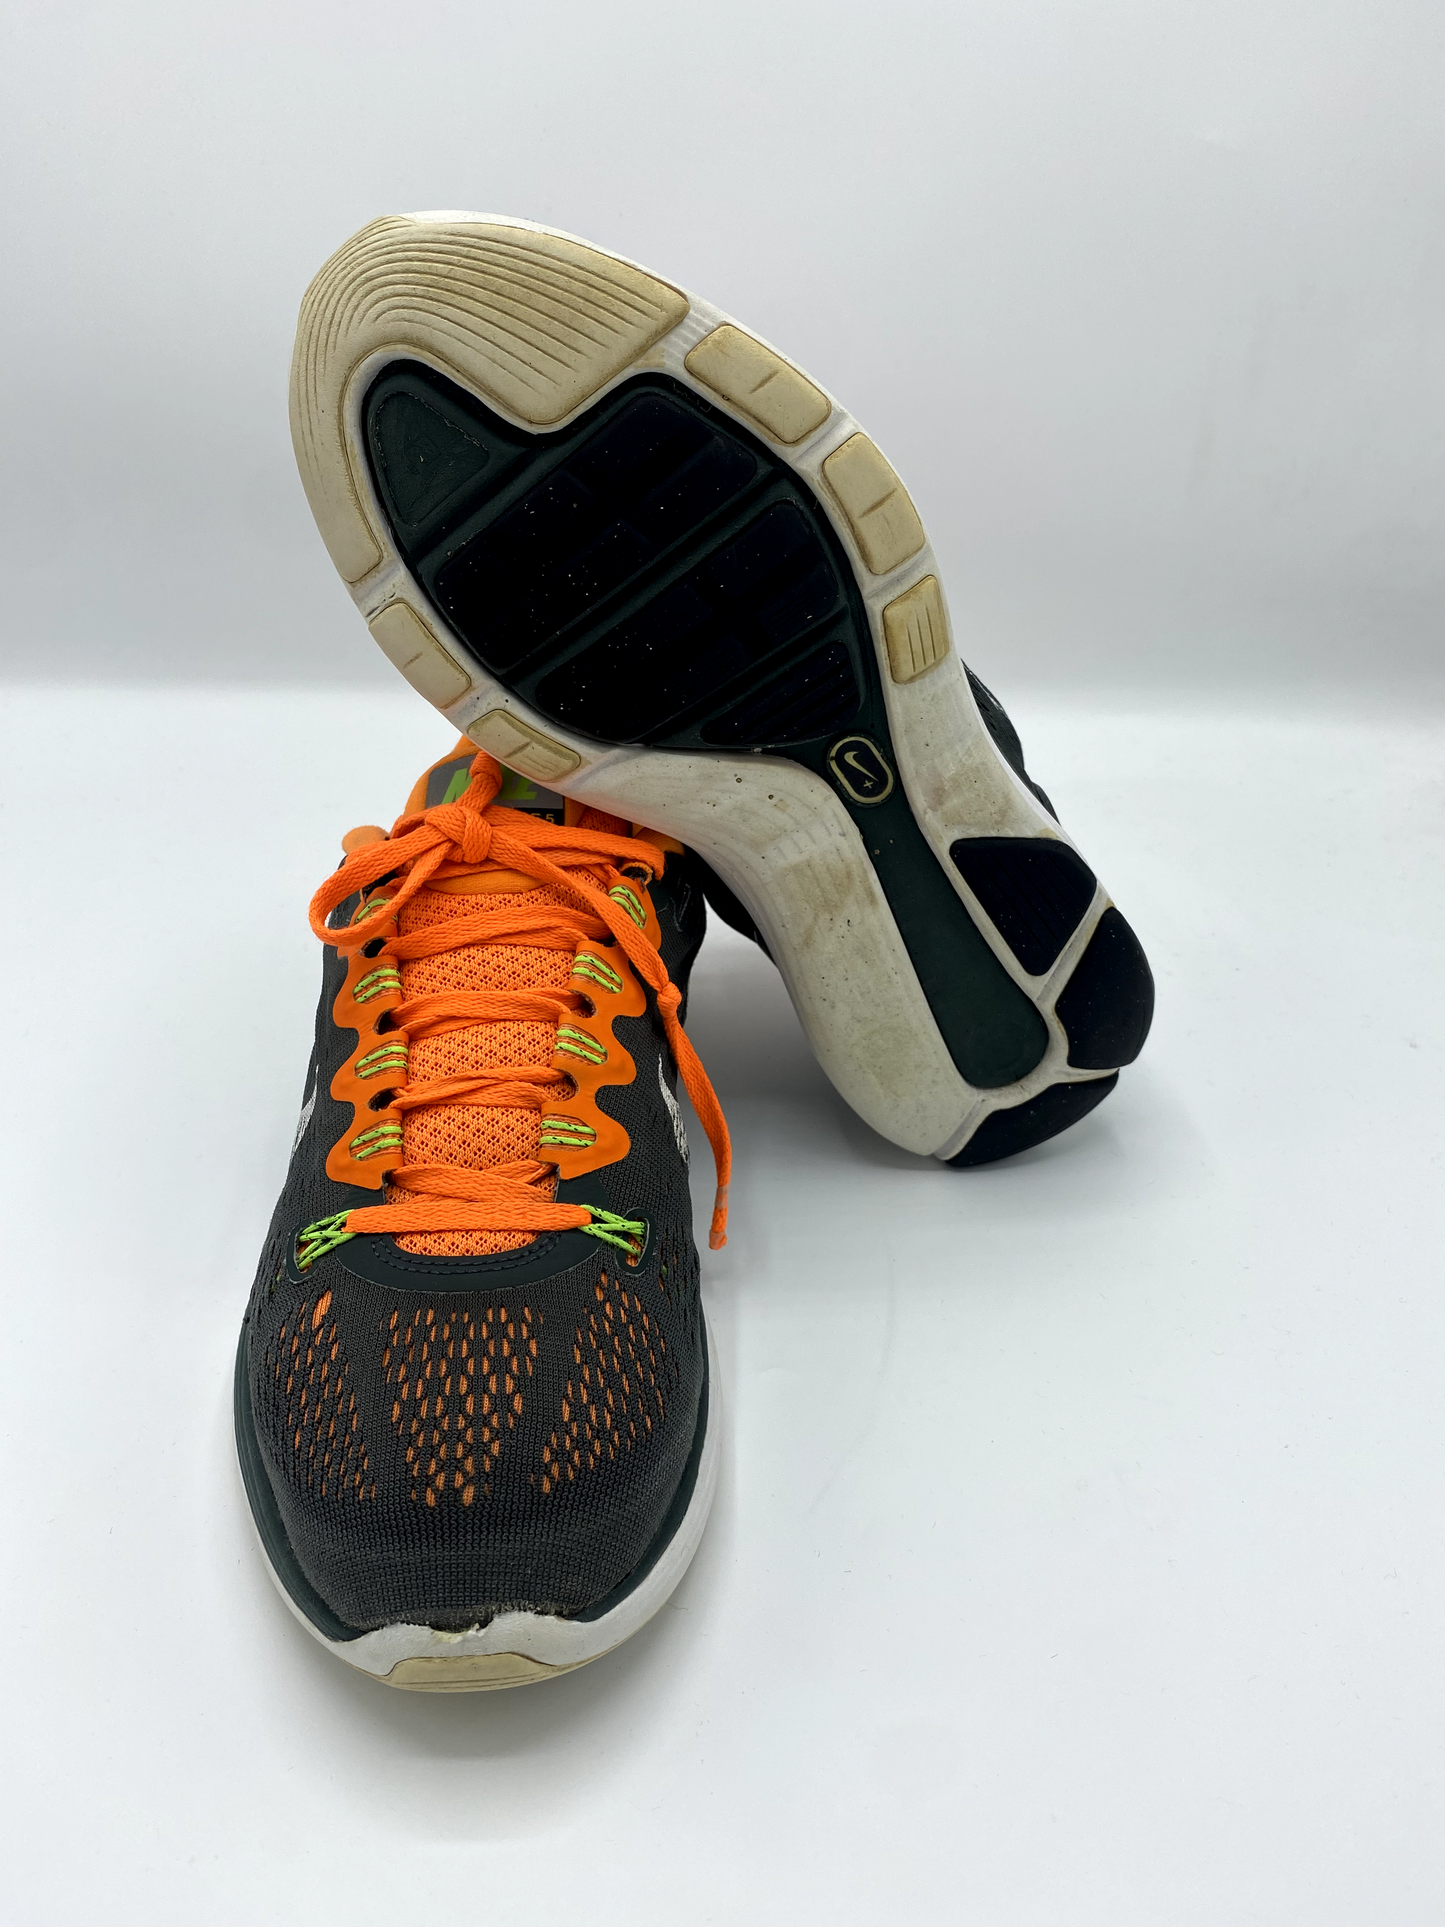 Nike lunarglide 5 green orange